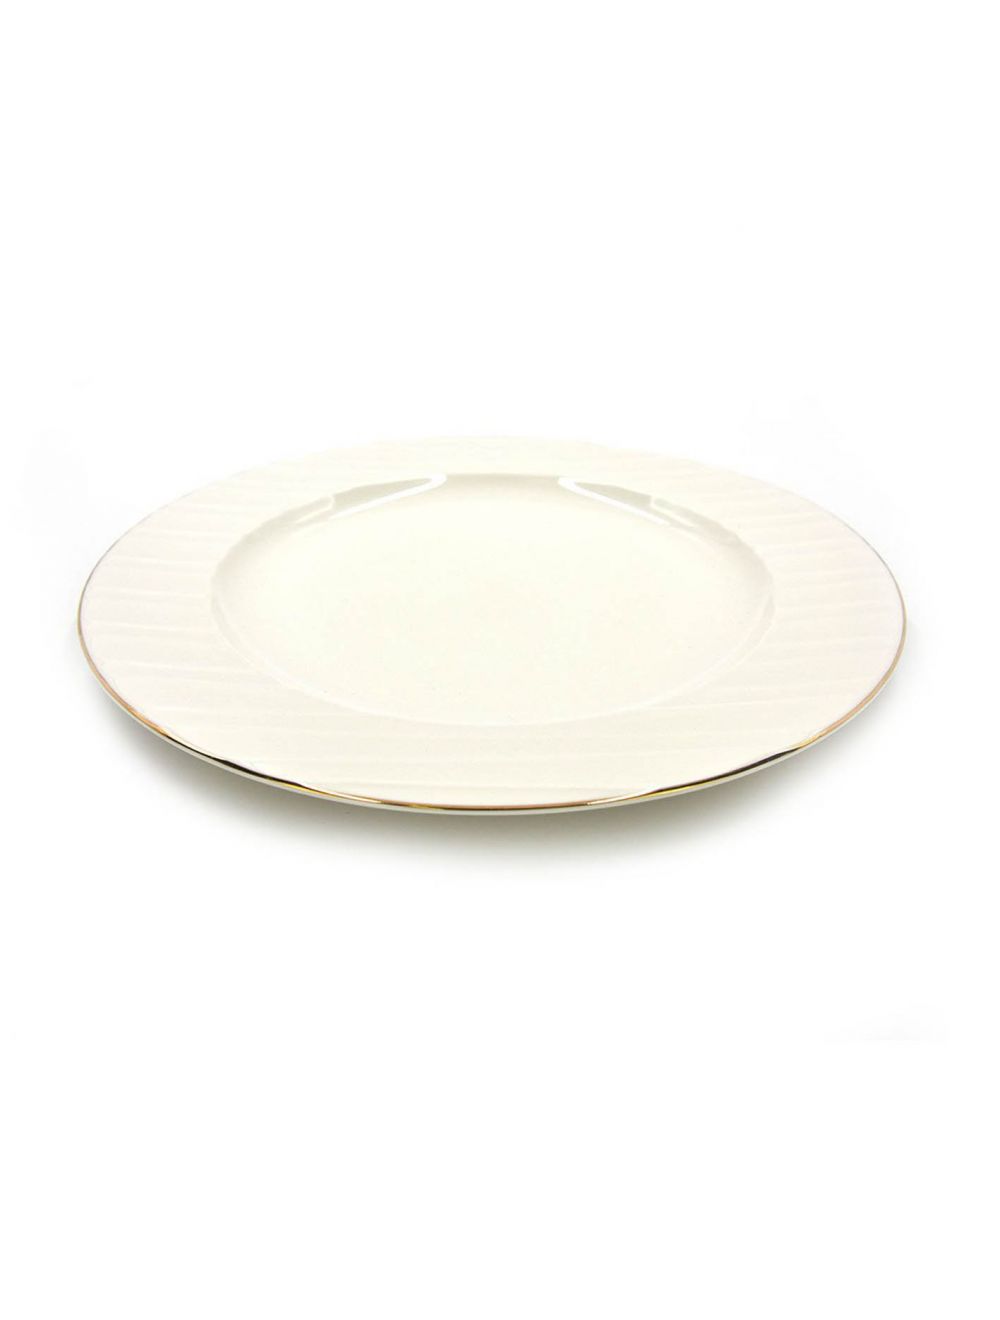 Qualitier Dinner Plate 28 cm Gold/White